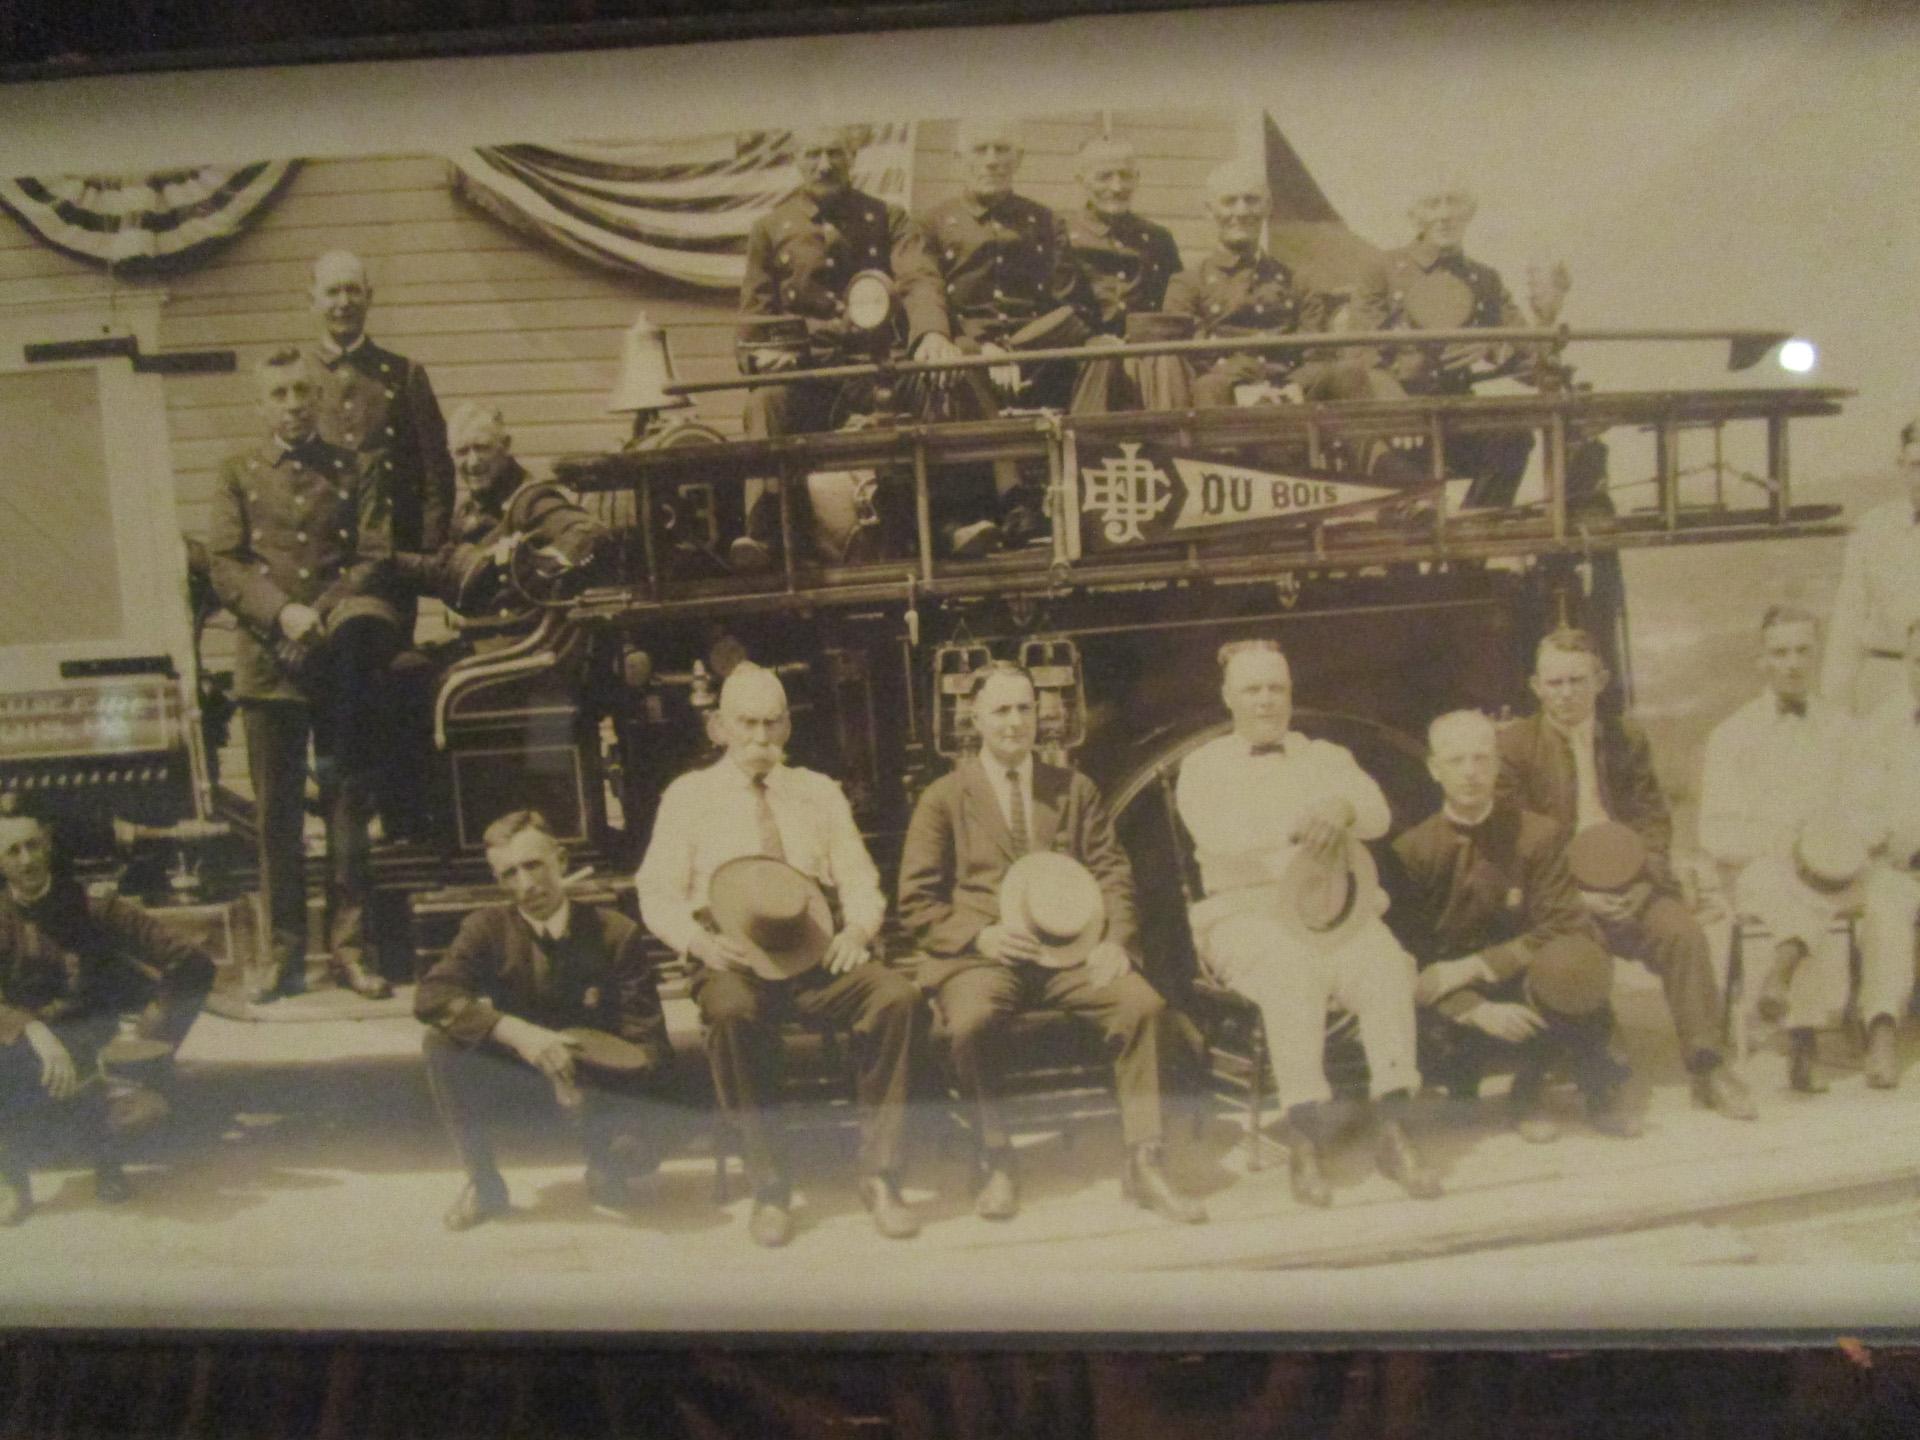 Grande photographie panoramique en noir et blanc représentant quarante-six membres du J.E. La DuBois Hose Company photographiée avec son camion de pompiers, DuBois, PA. Daté du 17 août 1922. Encadré dans un vieux cadre en bois de trois quarts de